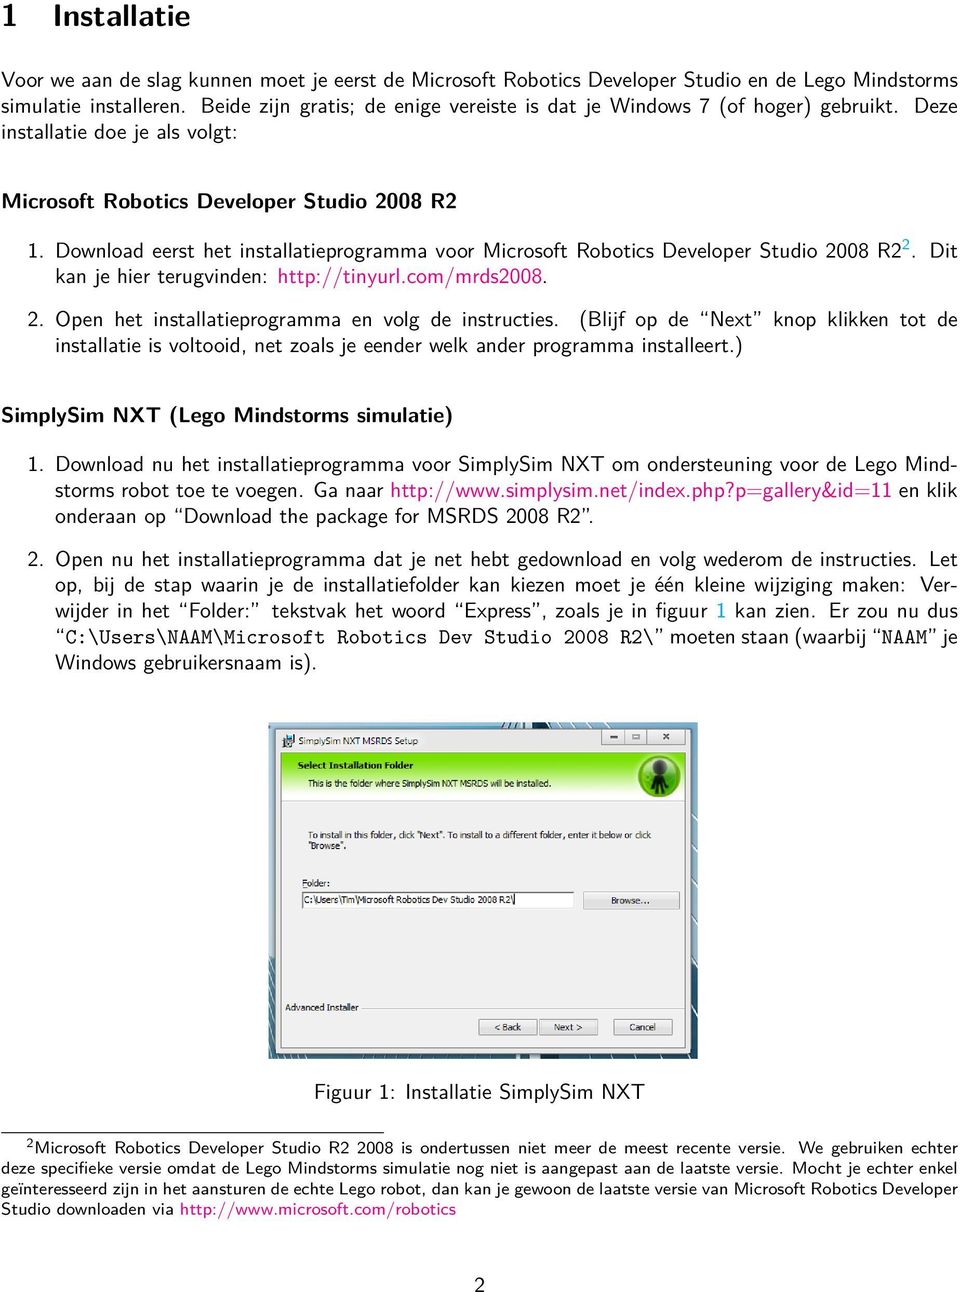 Download eerst het installatieprogramma voor Microsoft Robotics Developer Studio 2008 R2 2. Dit kan je hier terugvinden: http://tinyurl.com/mrds2008. 2. Open het installatieprogramma en volg de instructies.